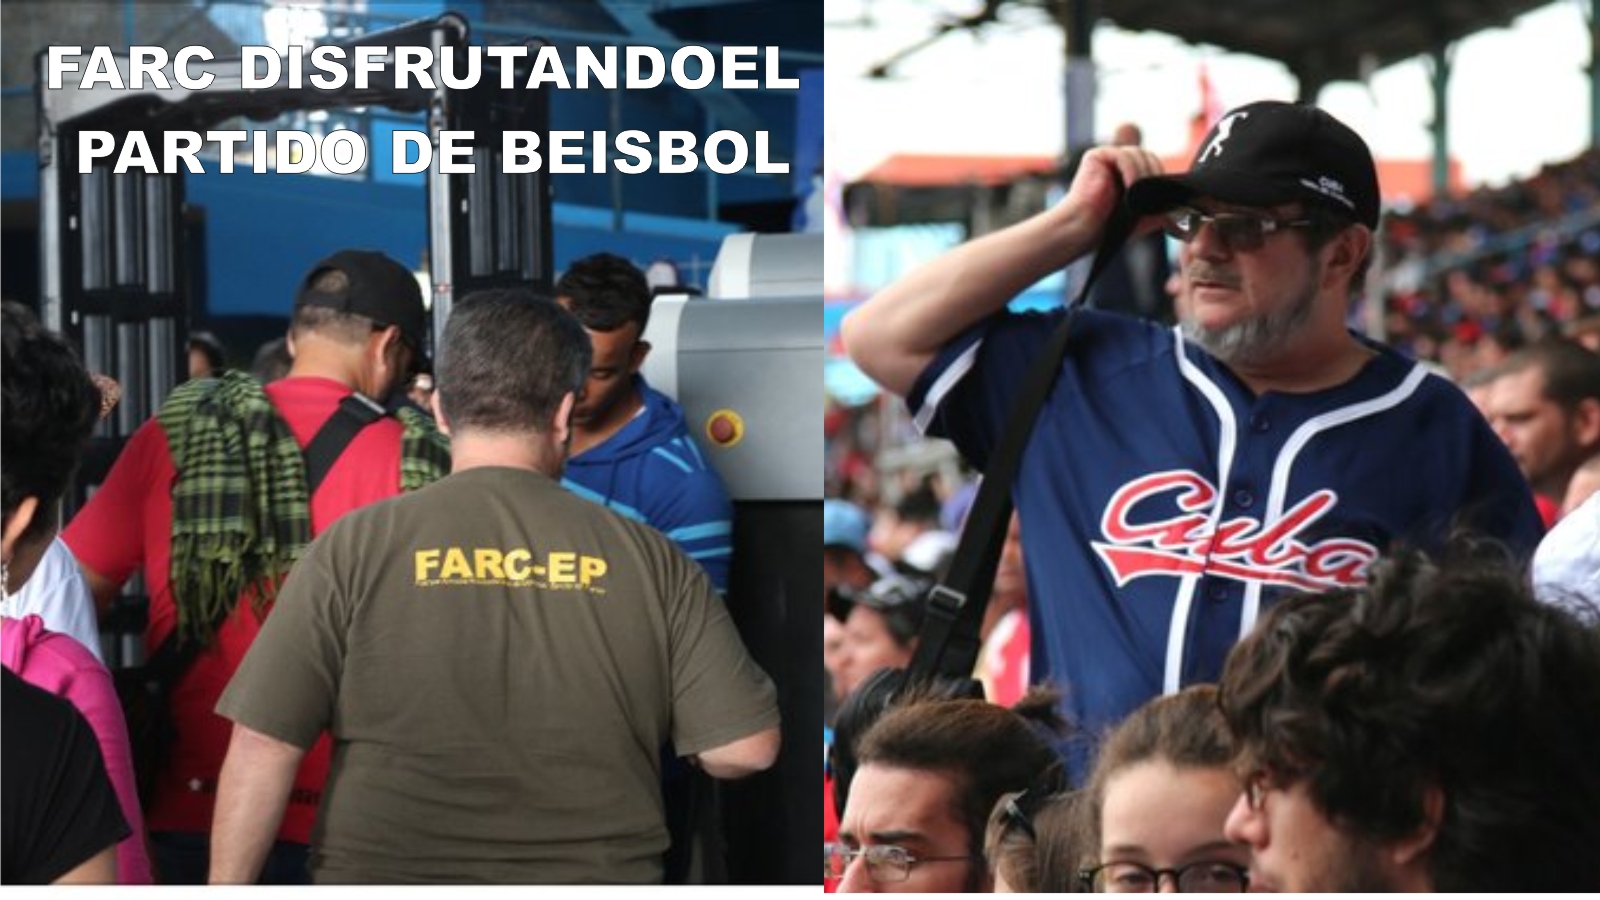 BEISBOL FARC EN CUBA